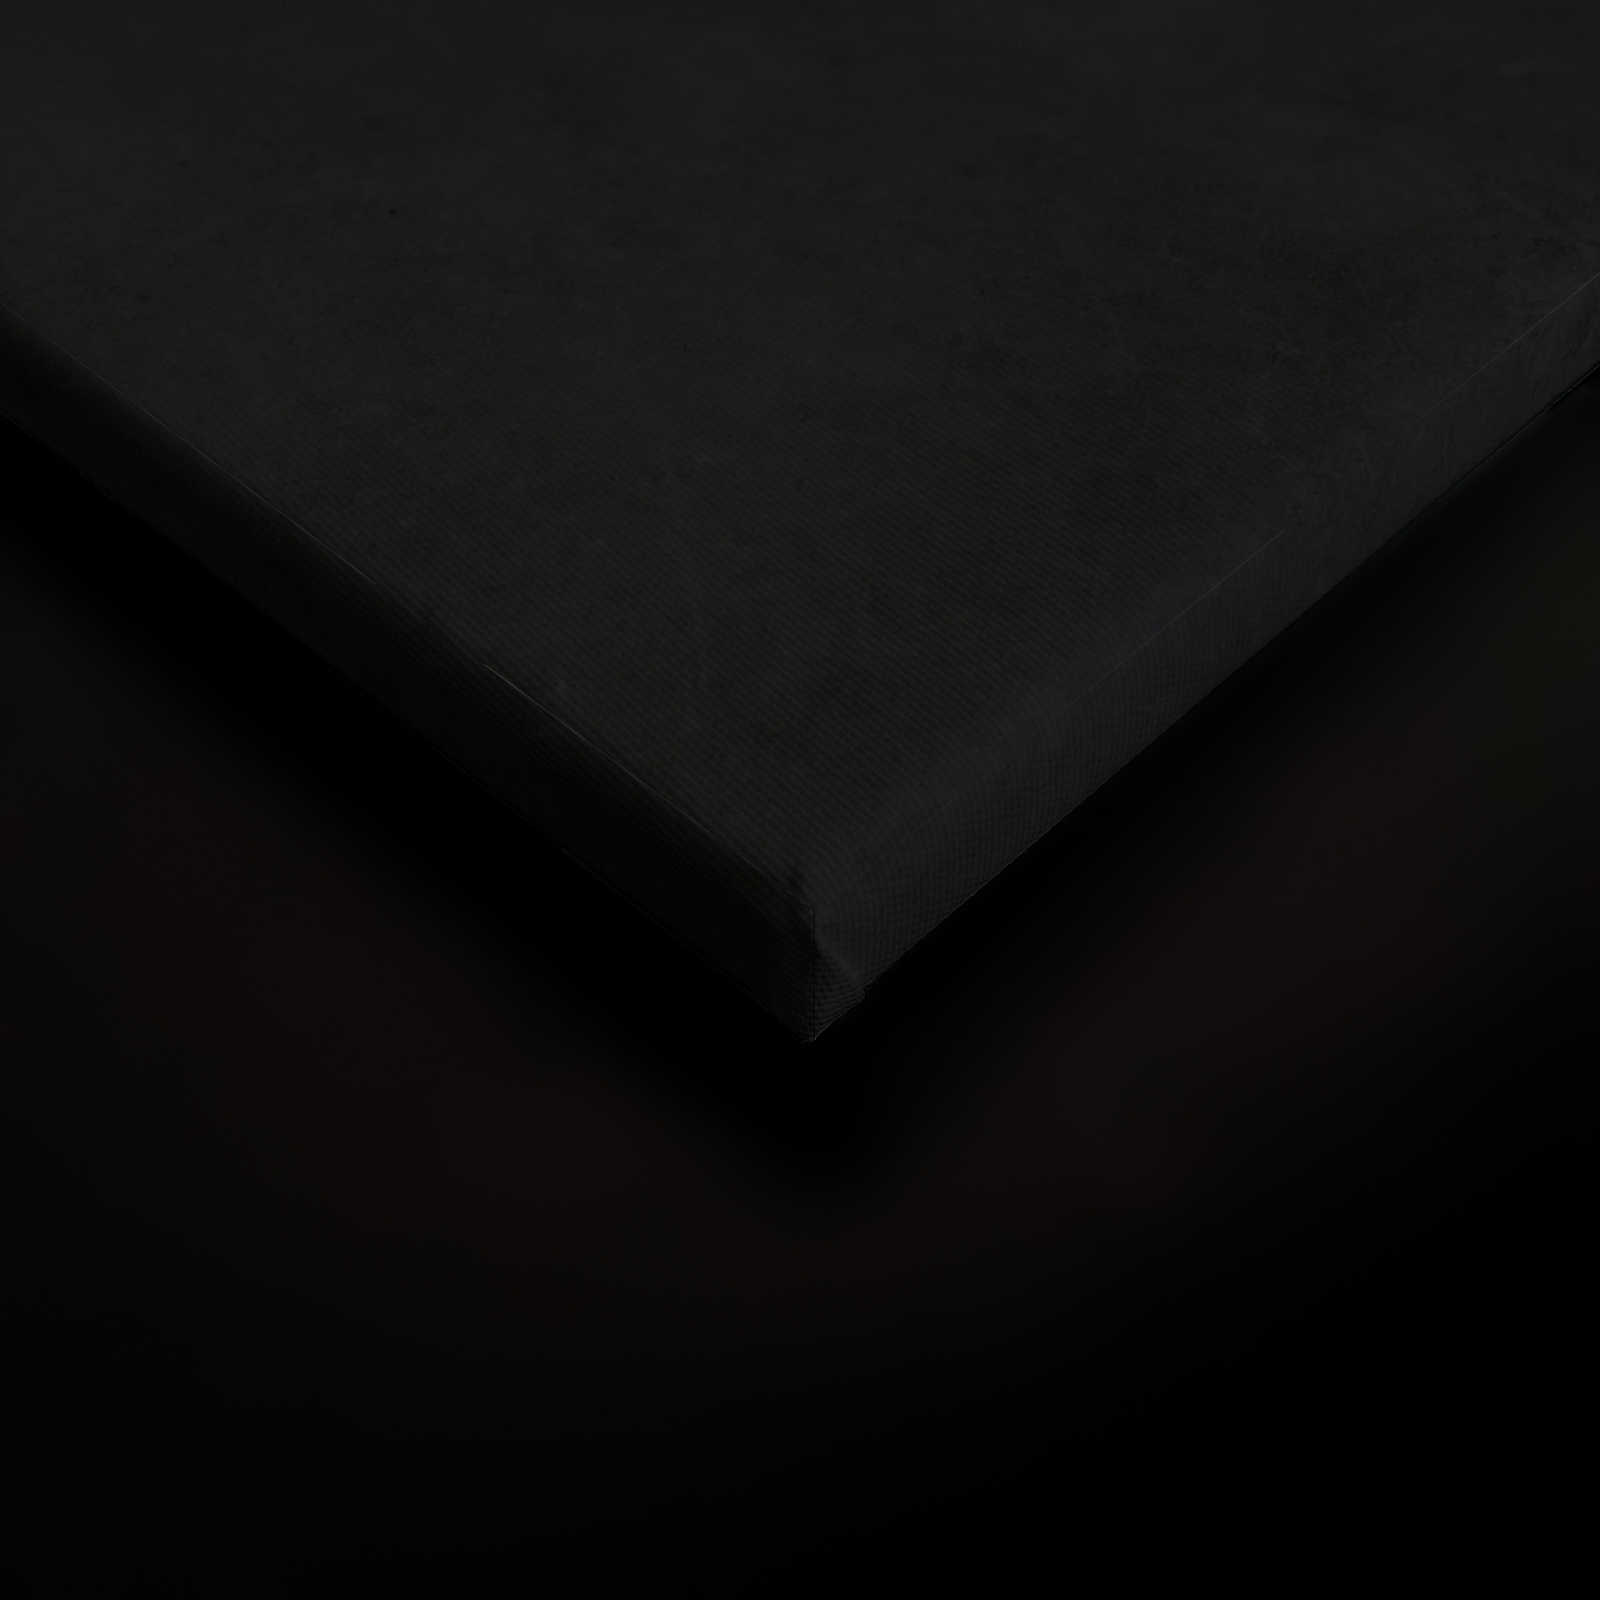             Giardino di mezzanotte 1 - Quadro su tela nera Stile pittura giglio in fiore - 0,80 m x 1,20 m
        